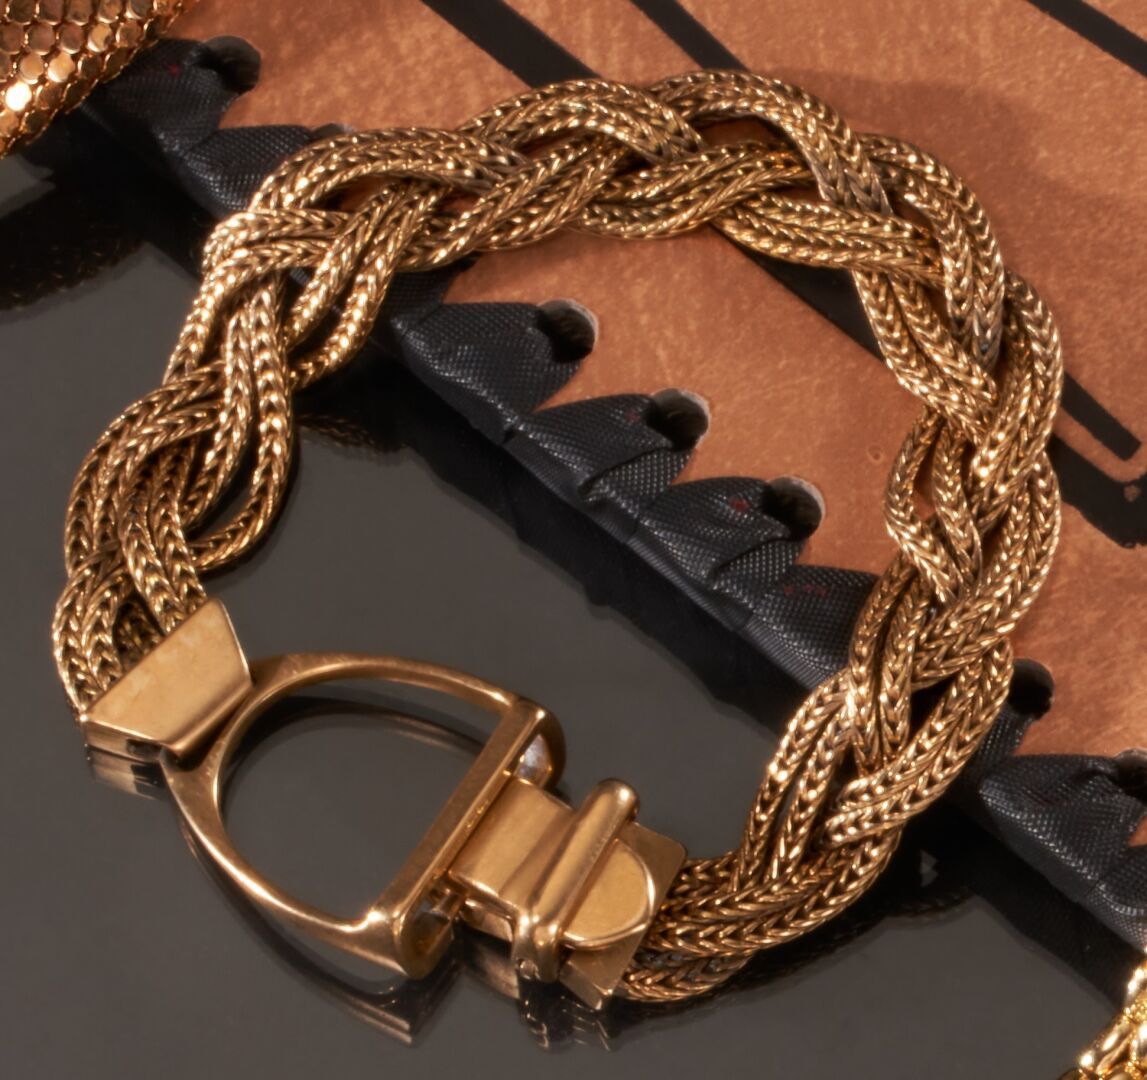 Null 巴黎爱马仕
750千分之一黄金铰接式手镯，链节为编织物，扣子上有马镫和带子装饰。
已签名。
(佩戴)
长度 : 19,7 cm
毛重 : 44,9 g